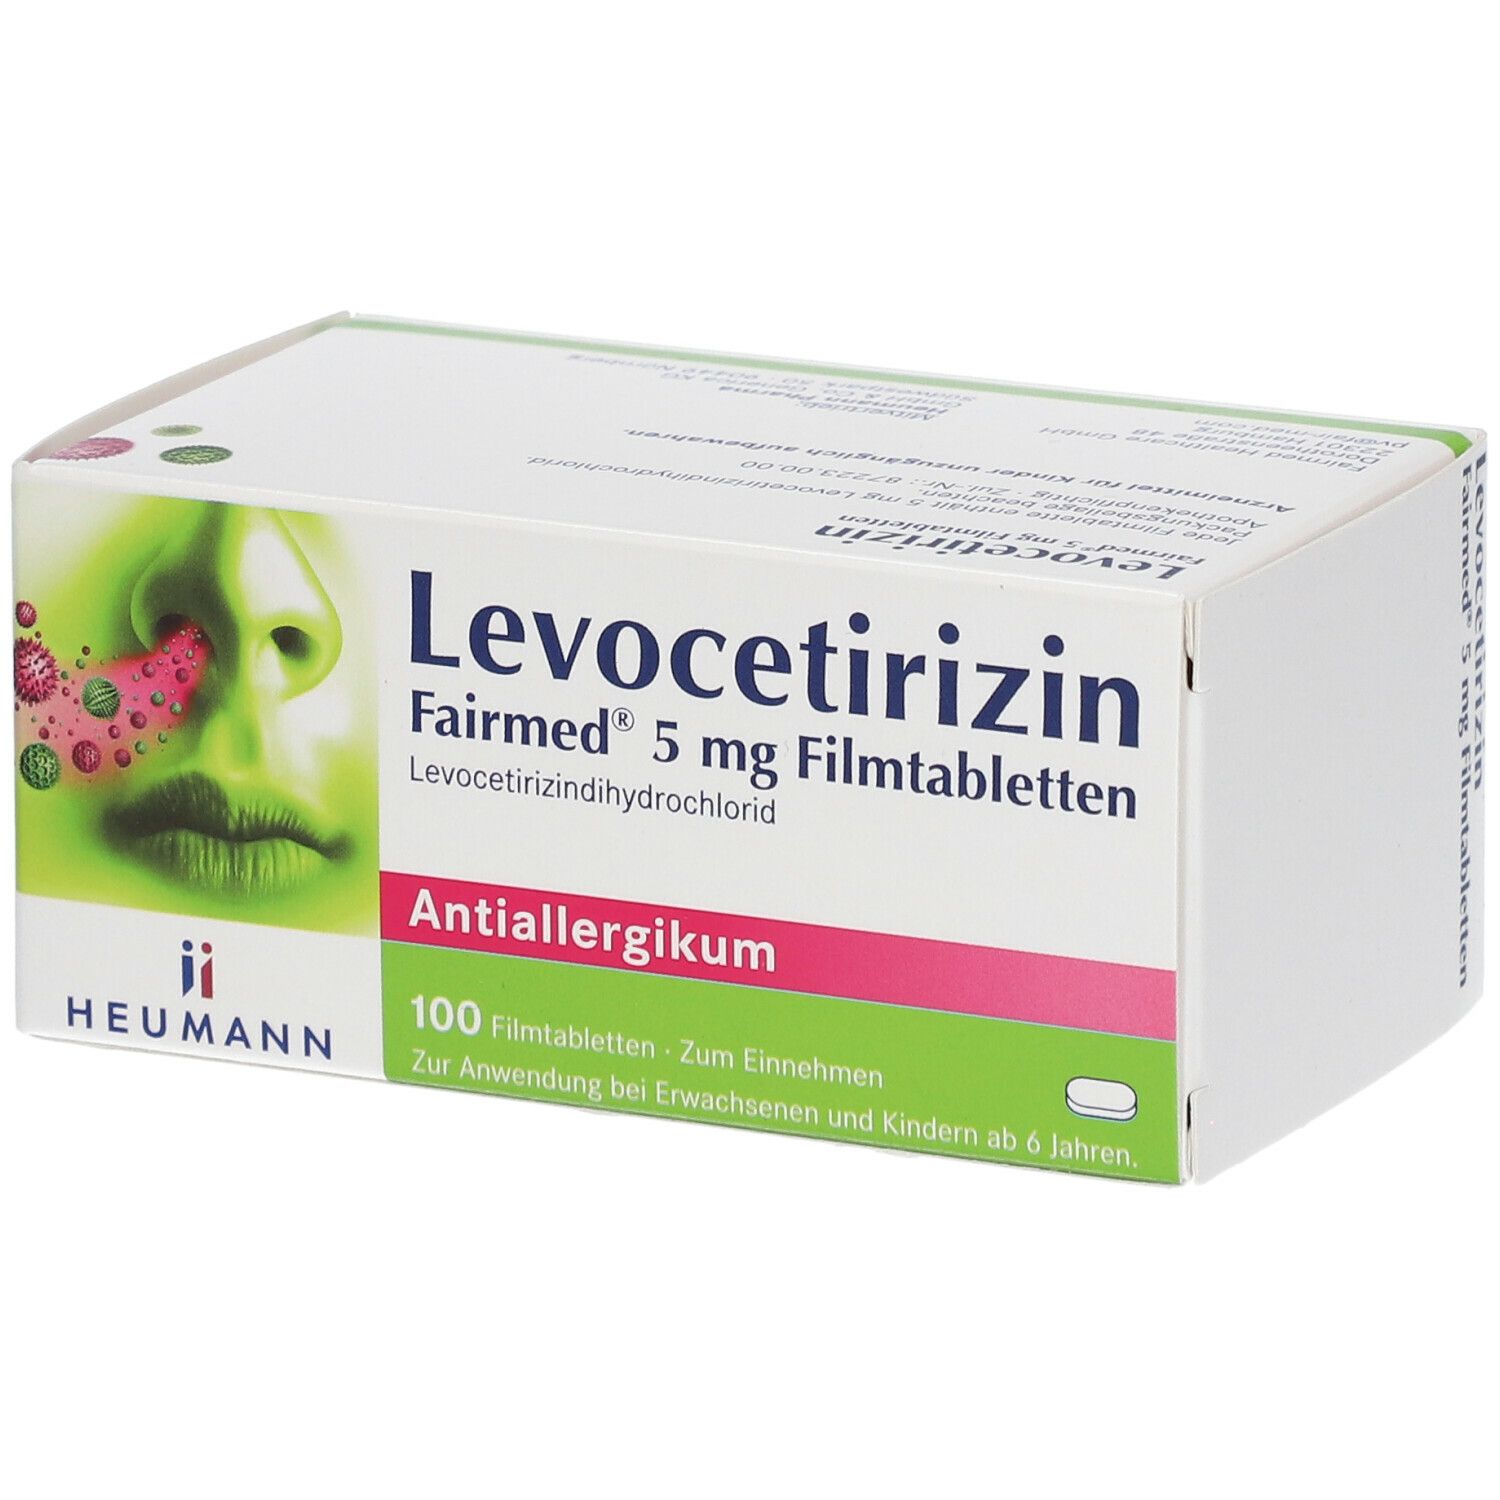 Levocetirizin Fairmed® 5 mg